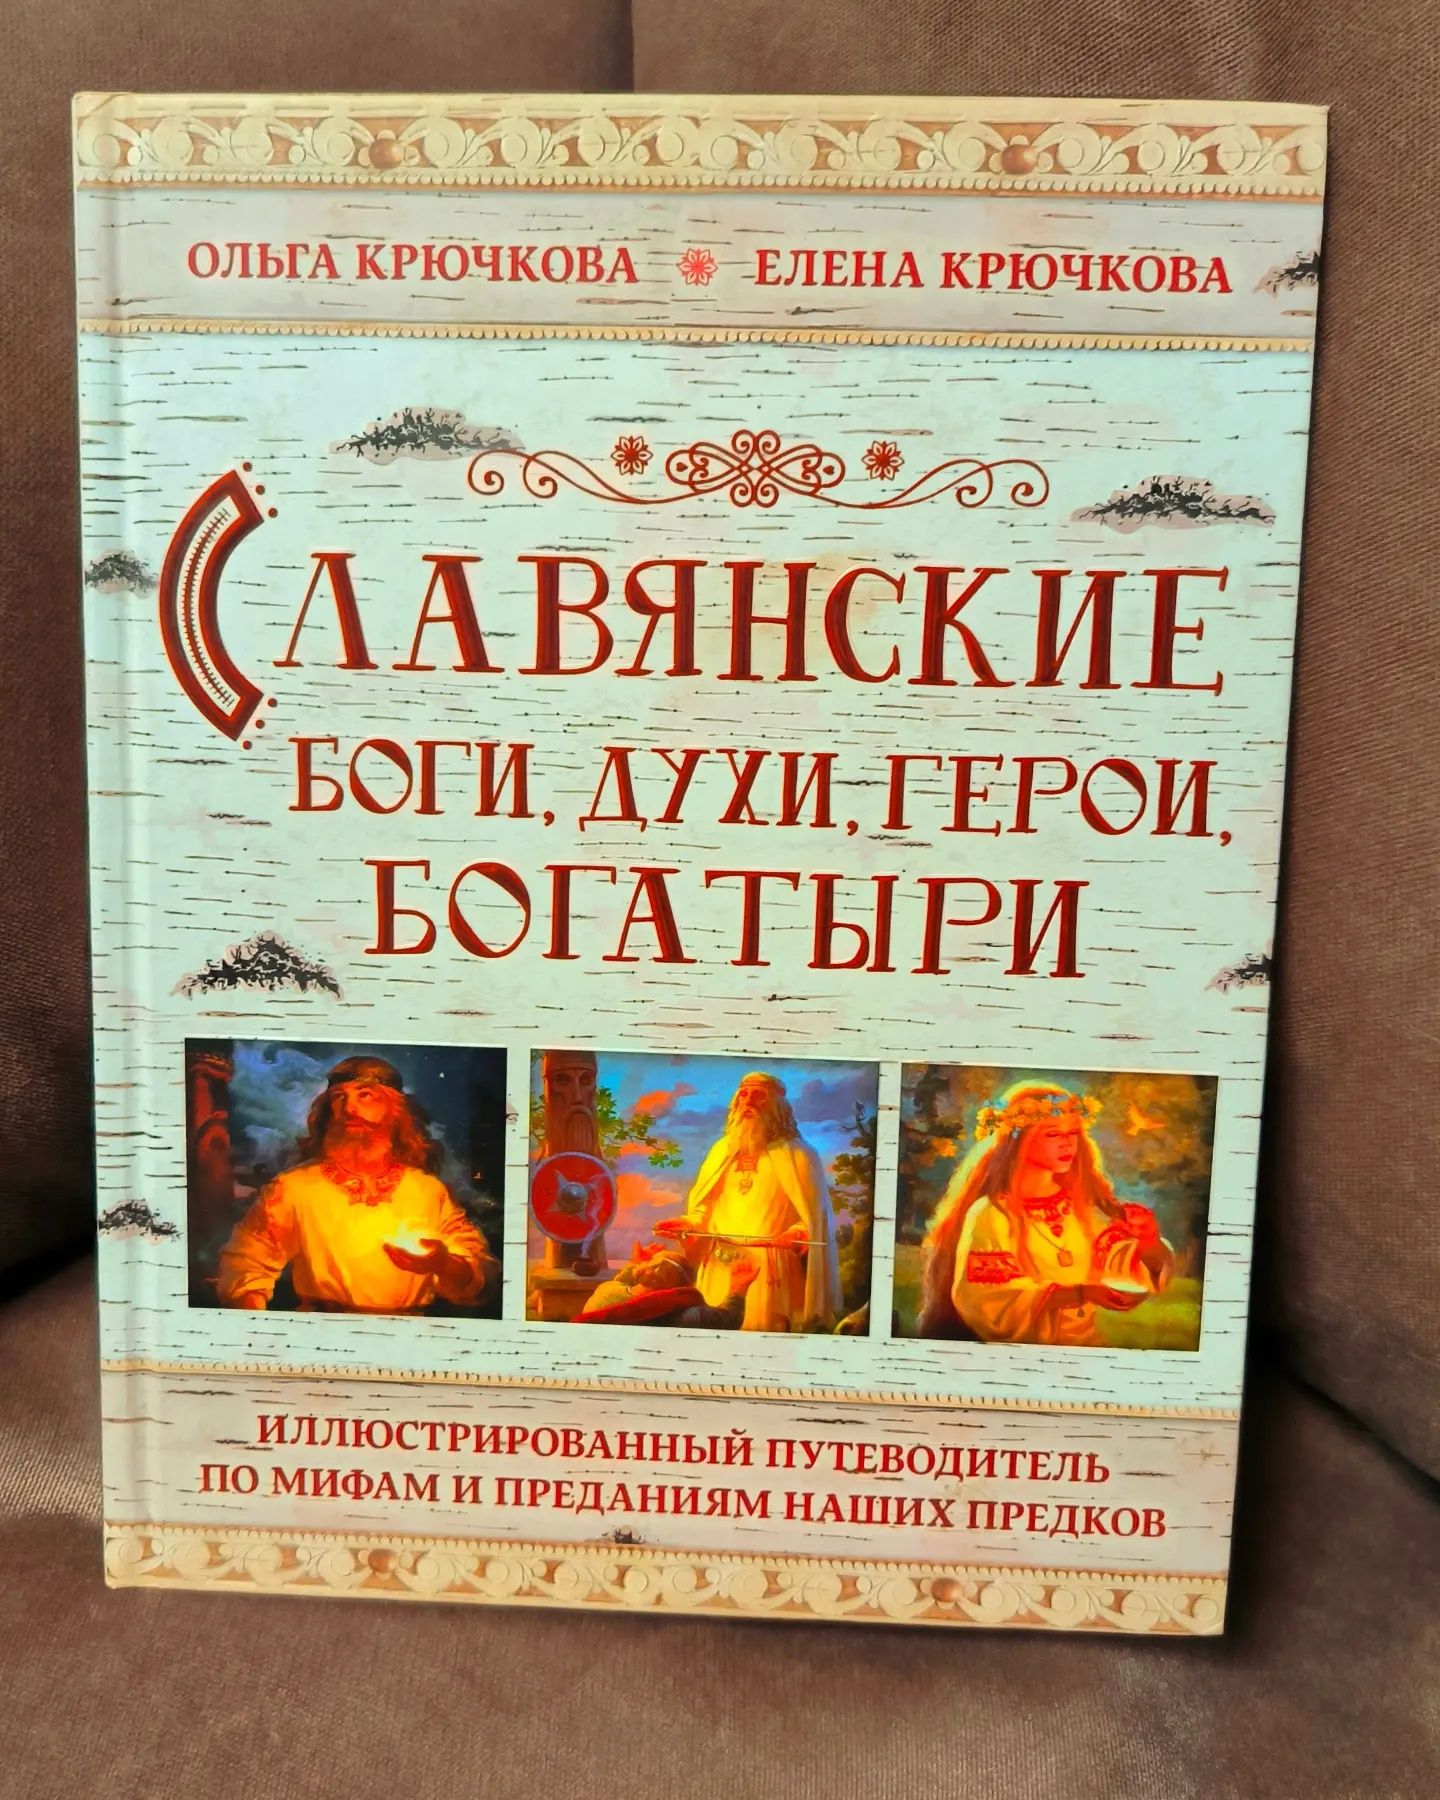 Крючкова Е. А.: Славянские боги, духи, герои, богатыри.